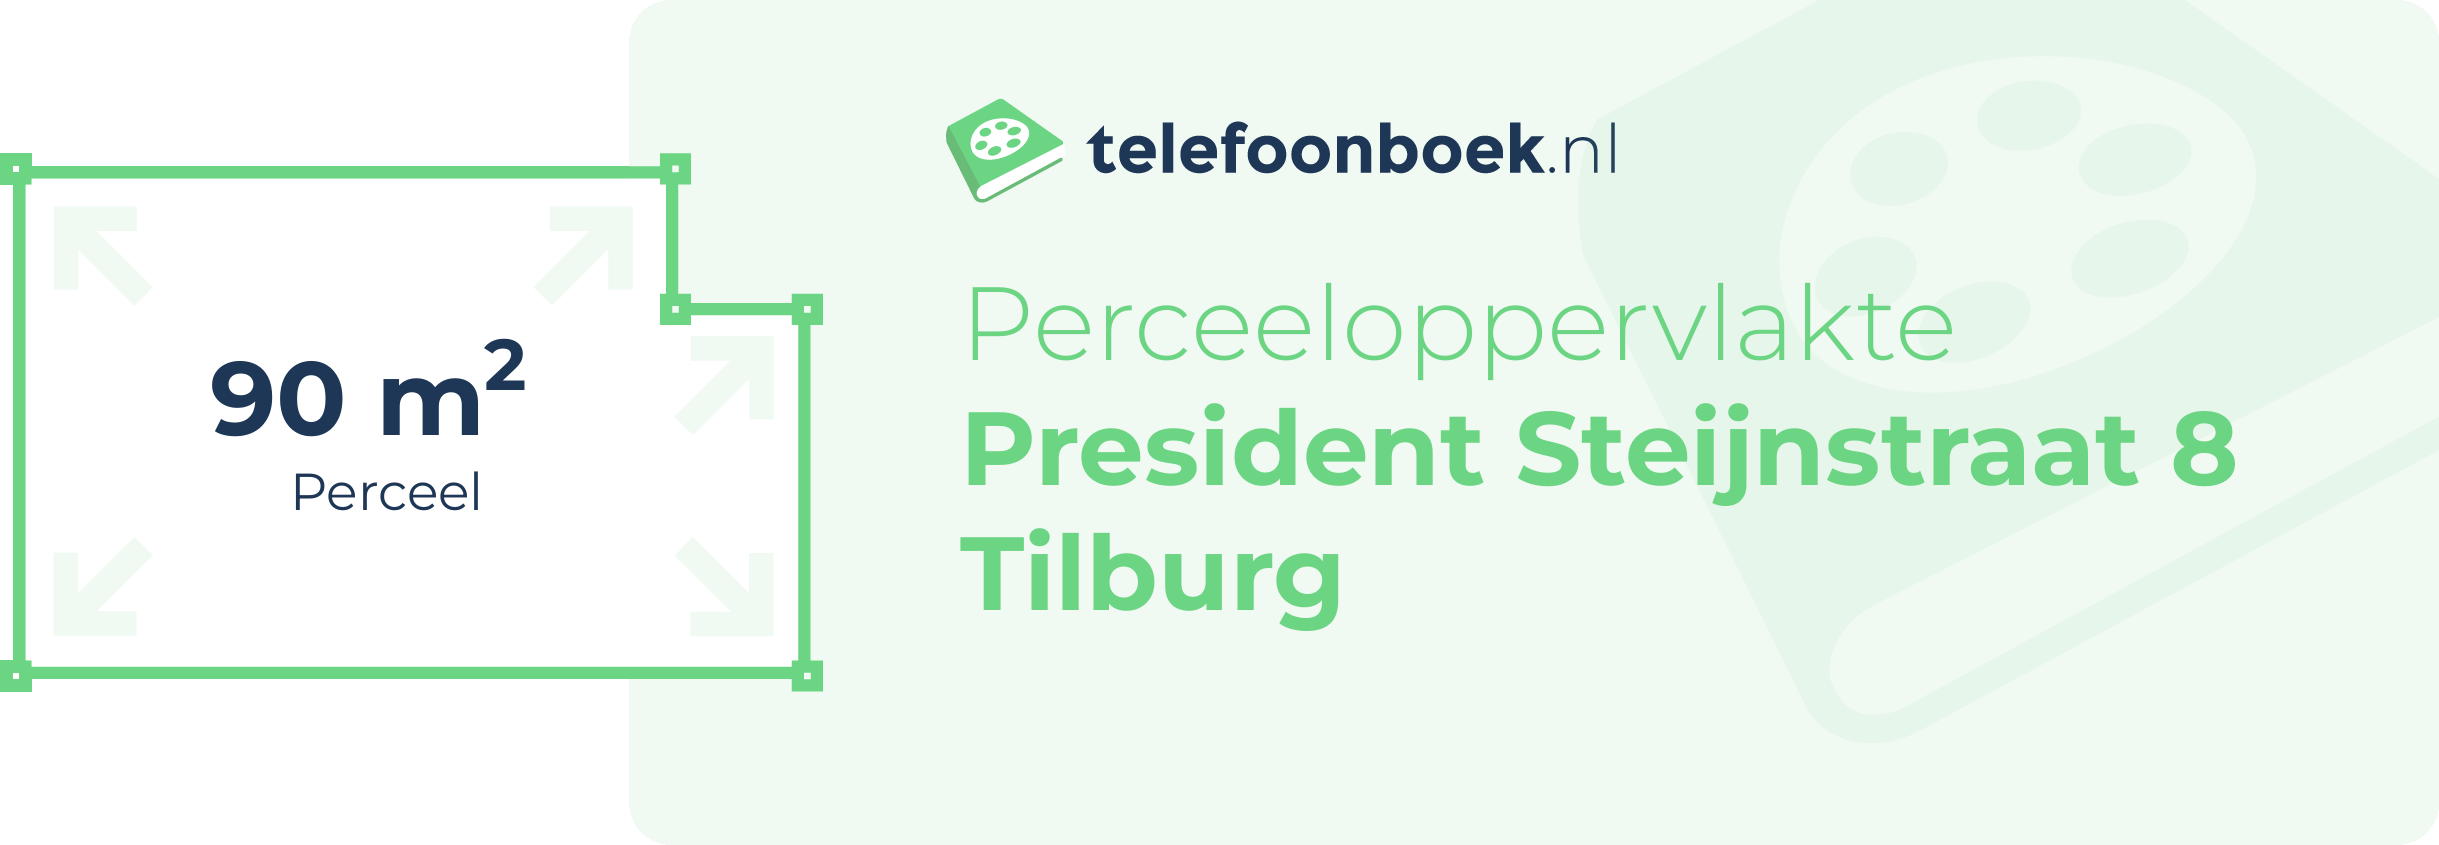 Perceeloppervlakte President Steijnstraat 8 Tilburg